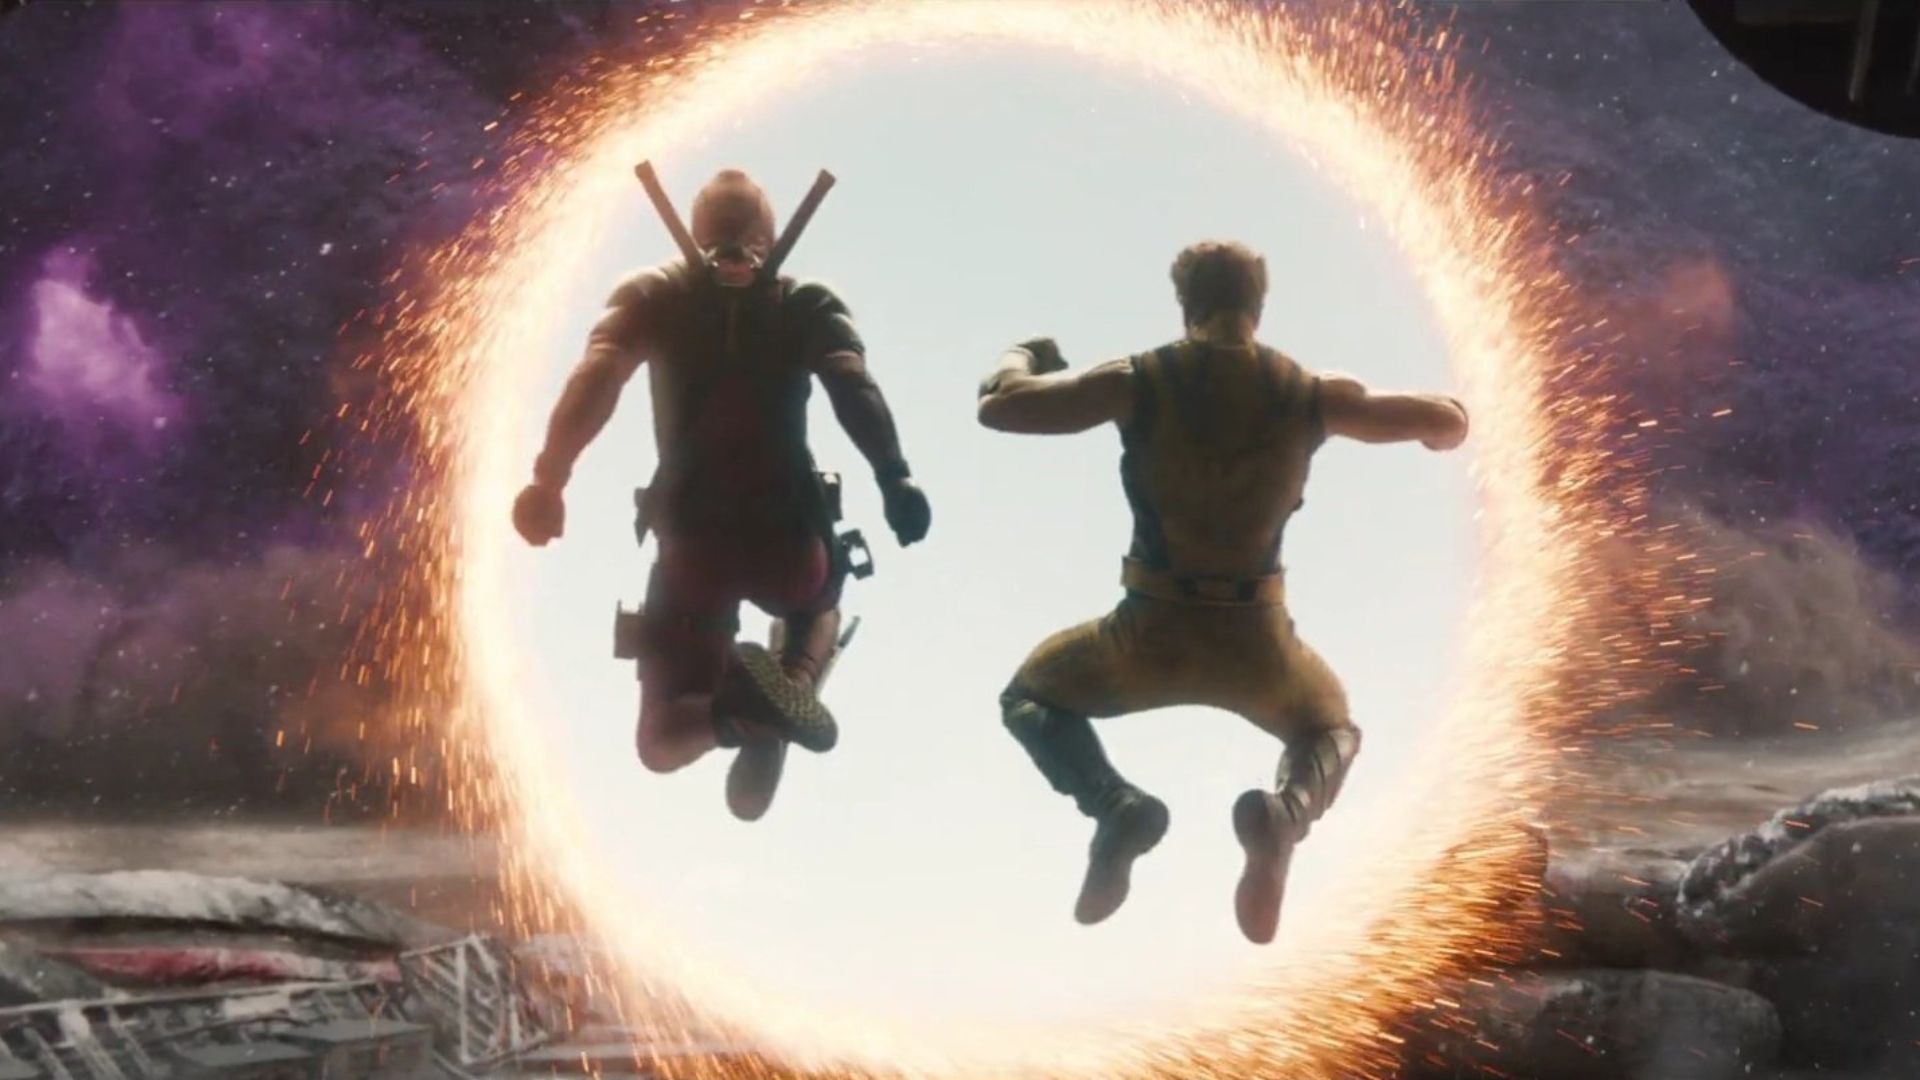 5 destaques do novo trailer de Deadpool & Wolverine (Foto: Reprodução/Marvel Studios)